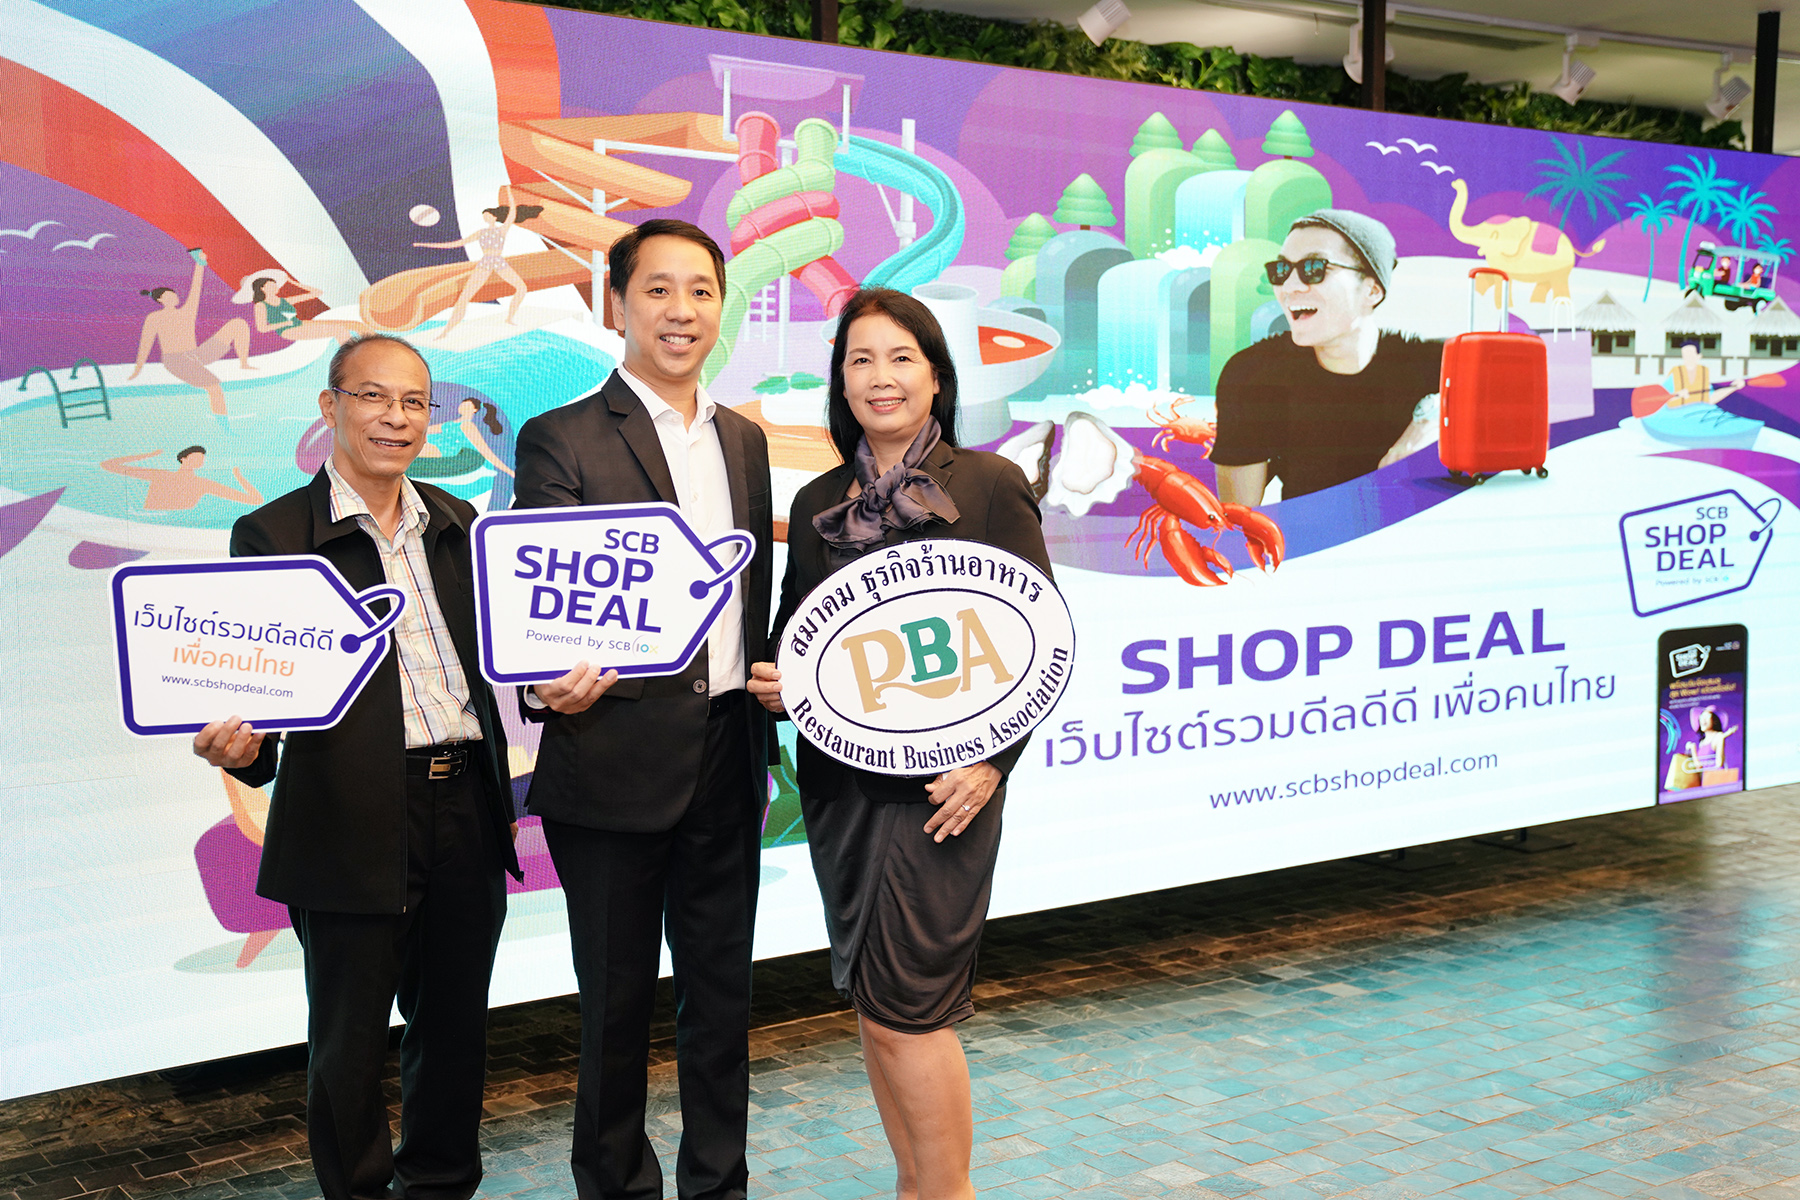 ไทยพาณิชย์ จับมือ สมาคมธุรกิจร้านอาหาร พลิกฟื้นรายได้ผู้ประกอบการทั่วไทย หนุนใช้ช่องทางขายออนไลน์ ดีลส่วนลดบนแพลตฟอร์ม